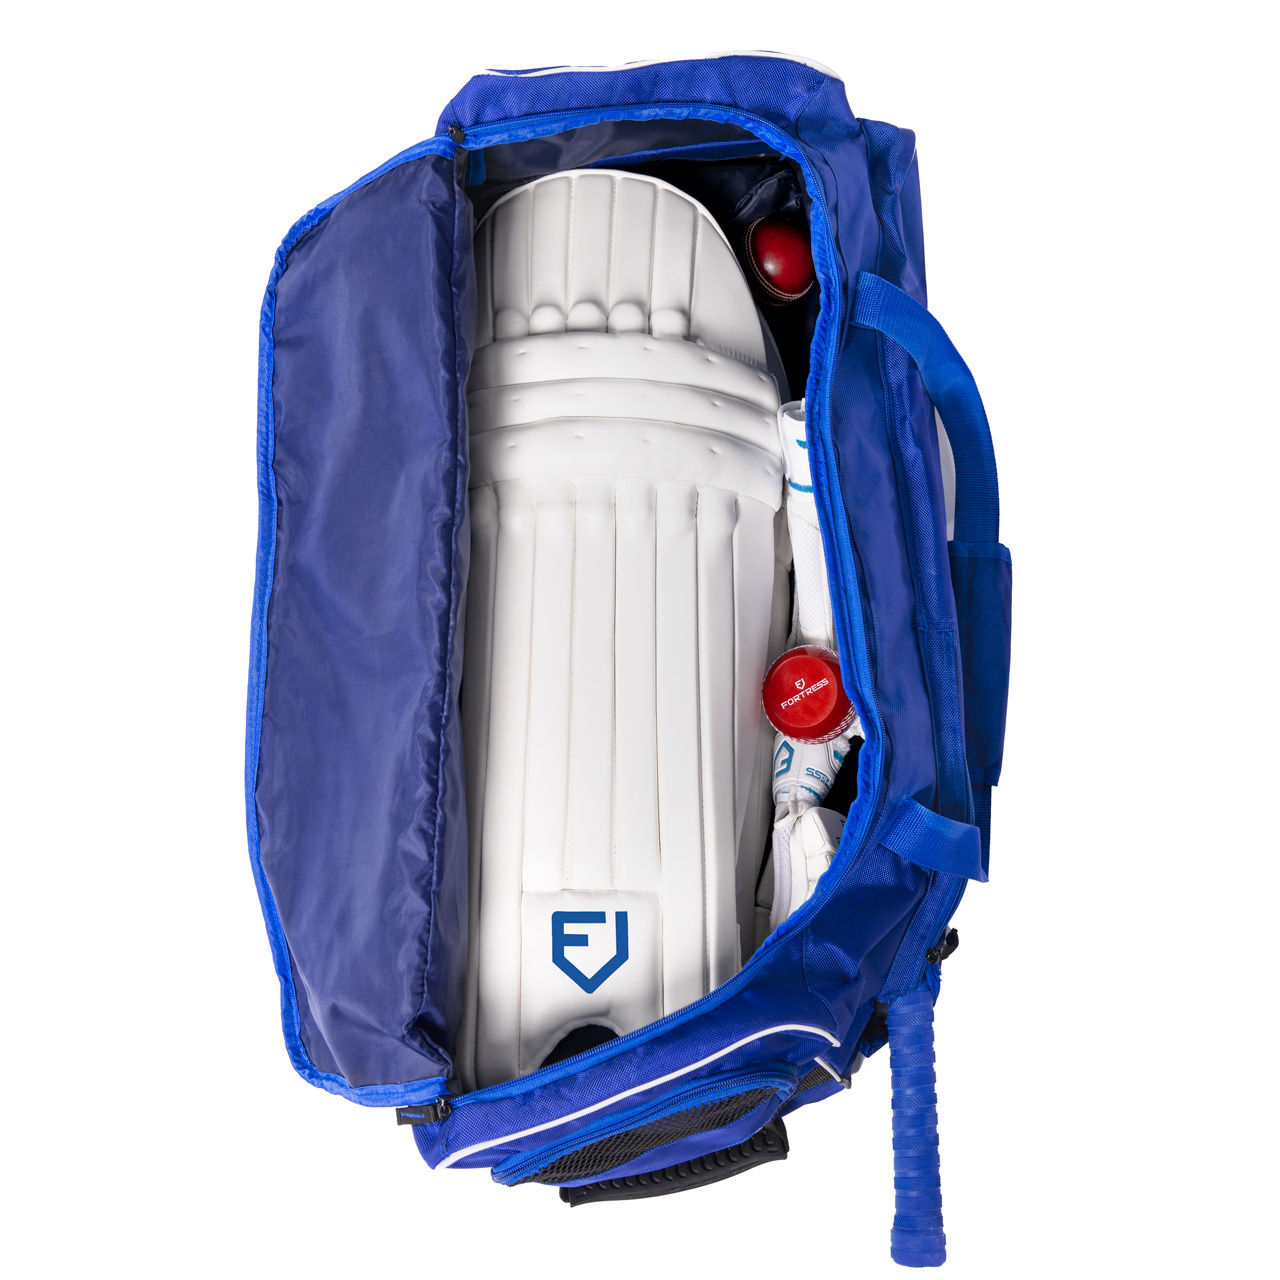 FORTRESS Original Wheelie Cricket Bag [120L/205L CAPACITY]